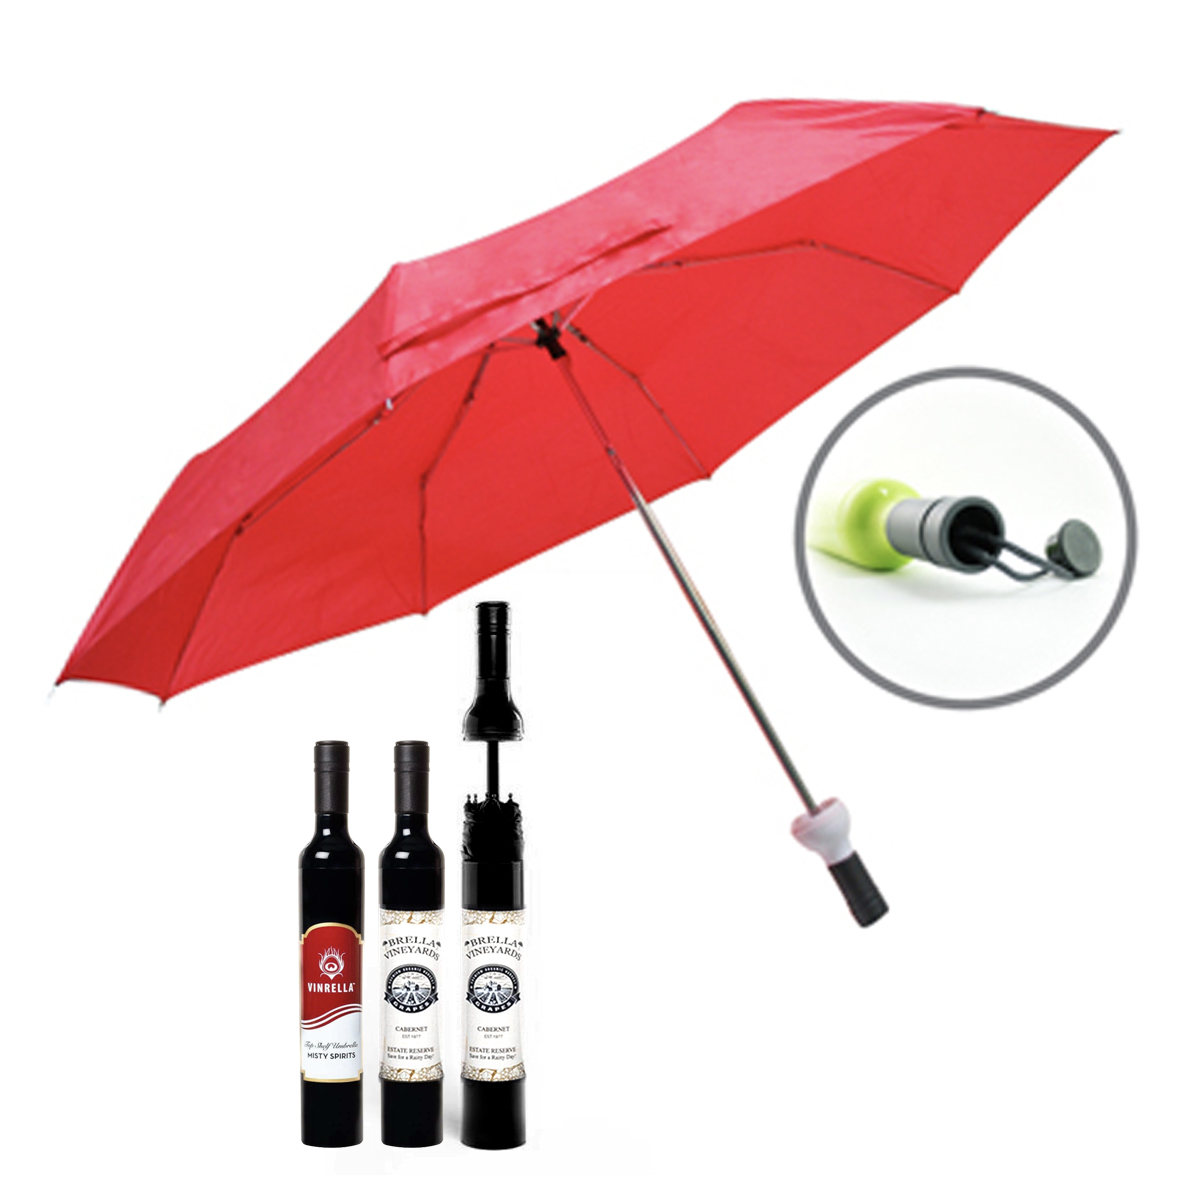 Wine Bottle Shape Umbrella